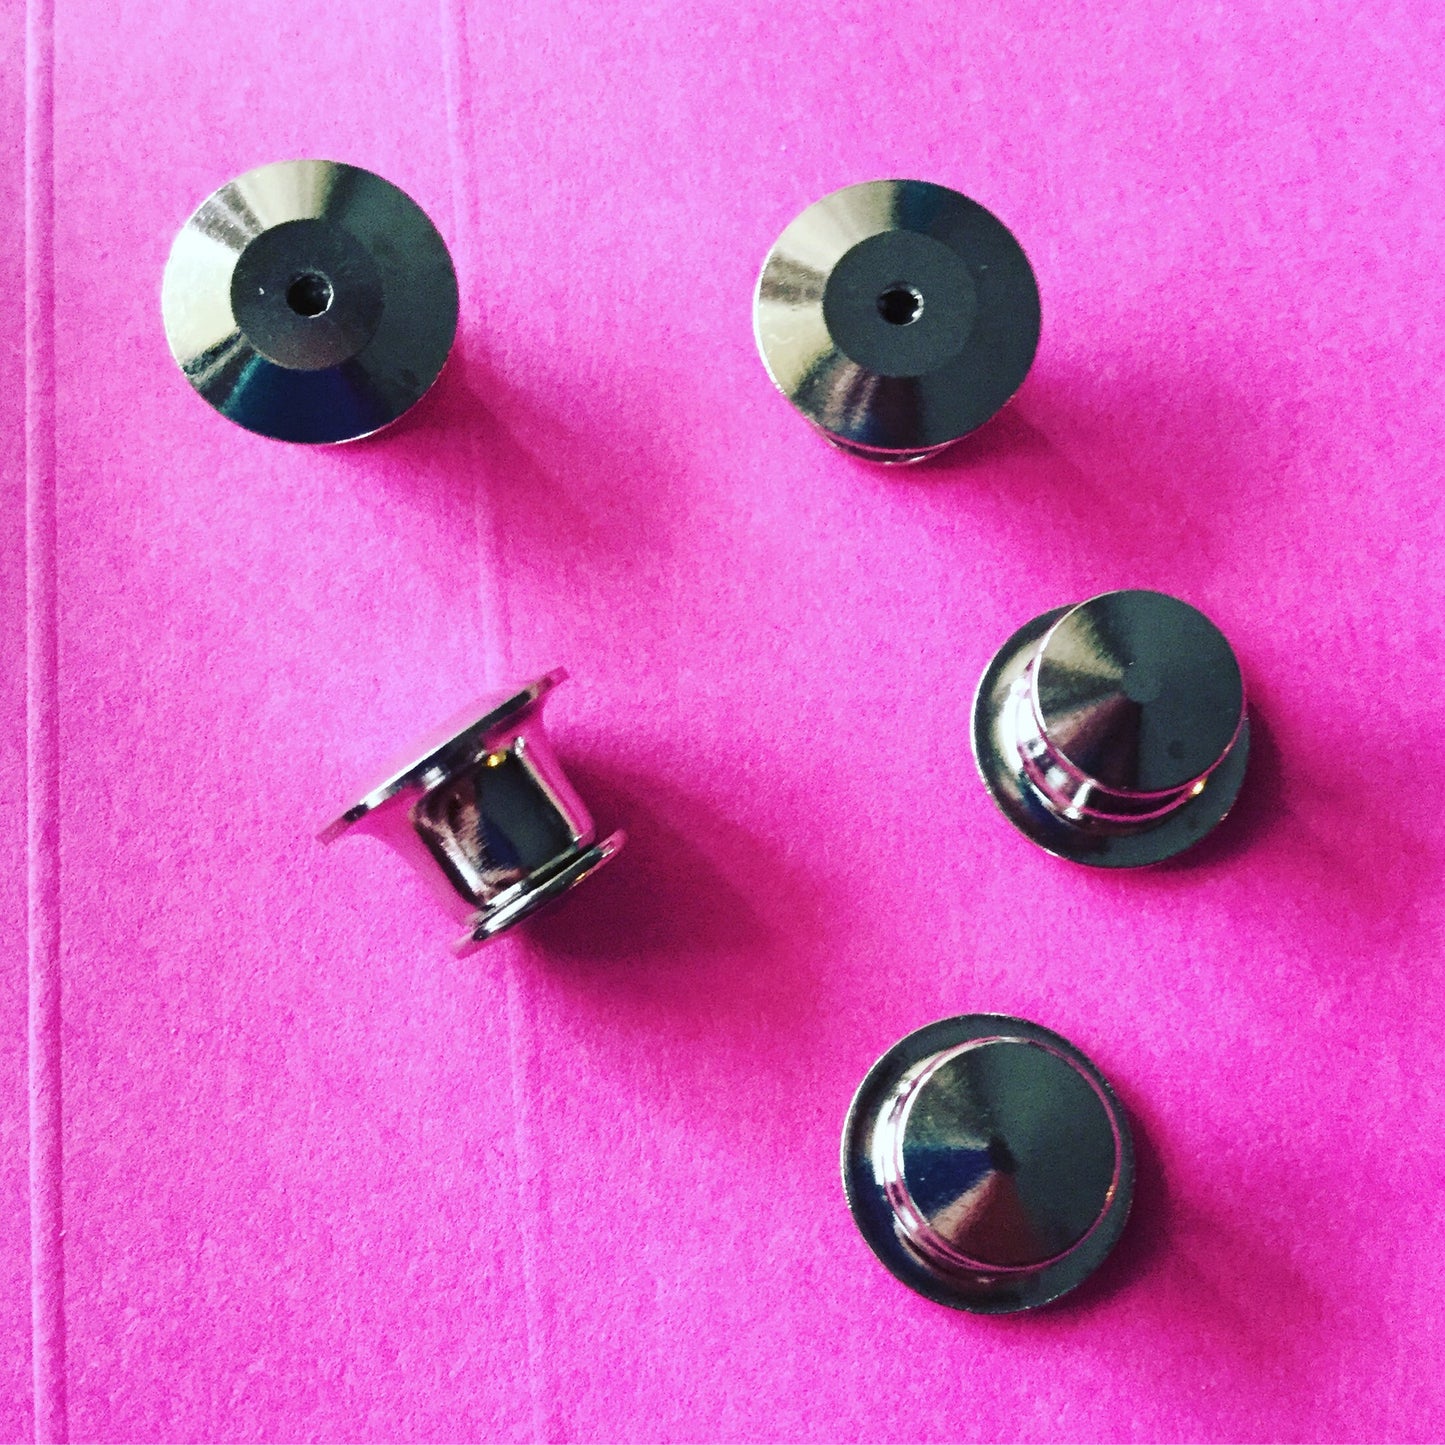 Locking pin backs - Radical Buttons